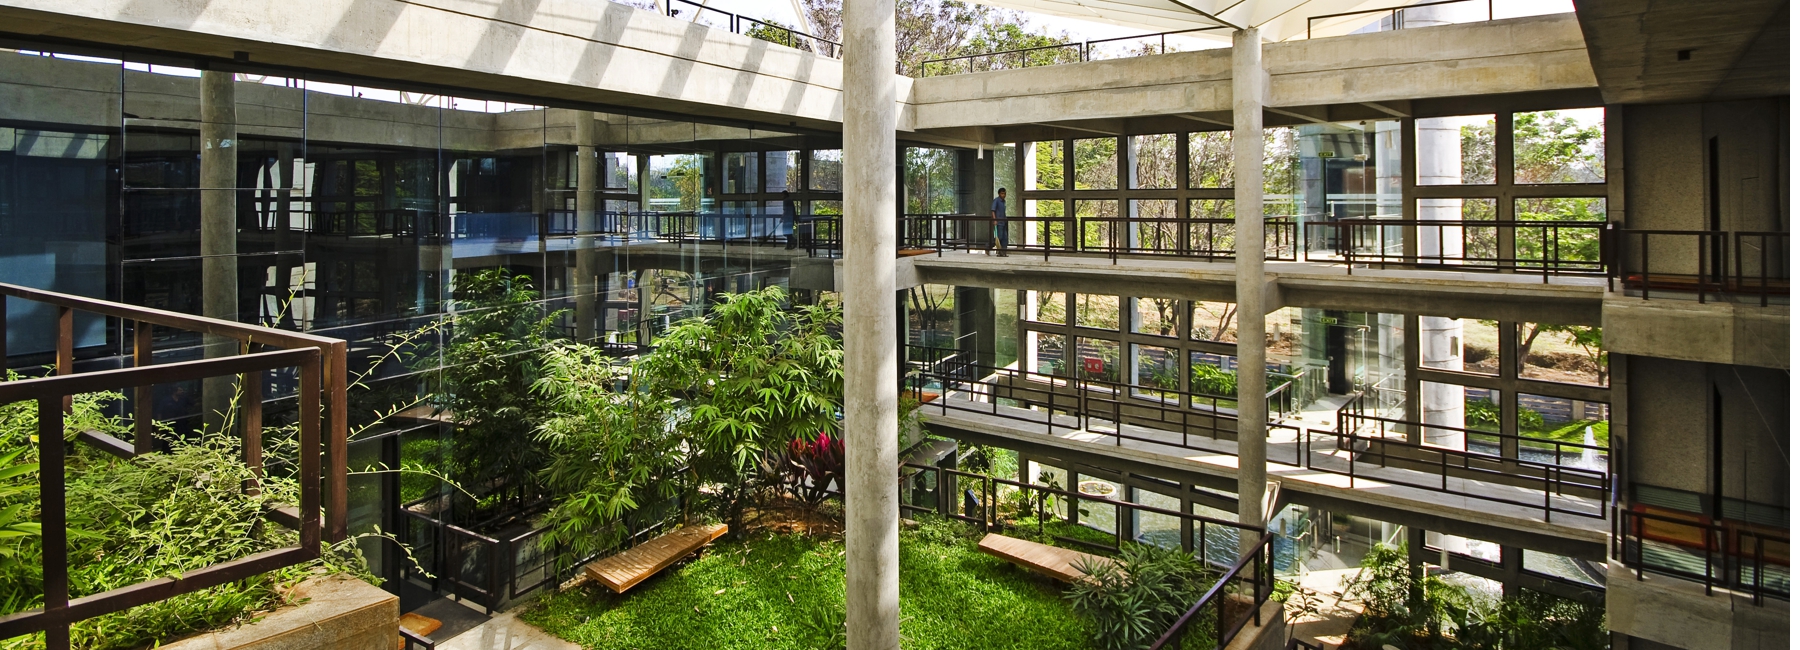 Core Architecture Plants A Tropical Garden On A Concrete